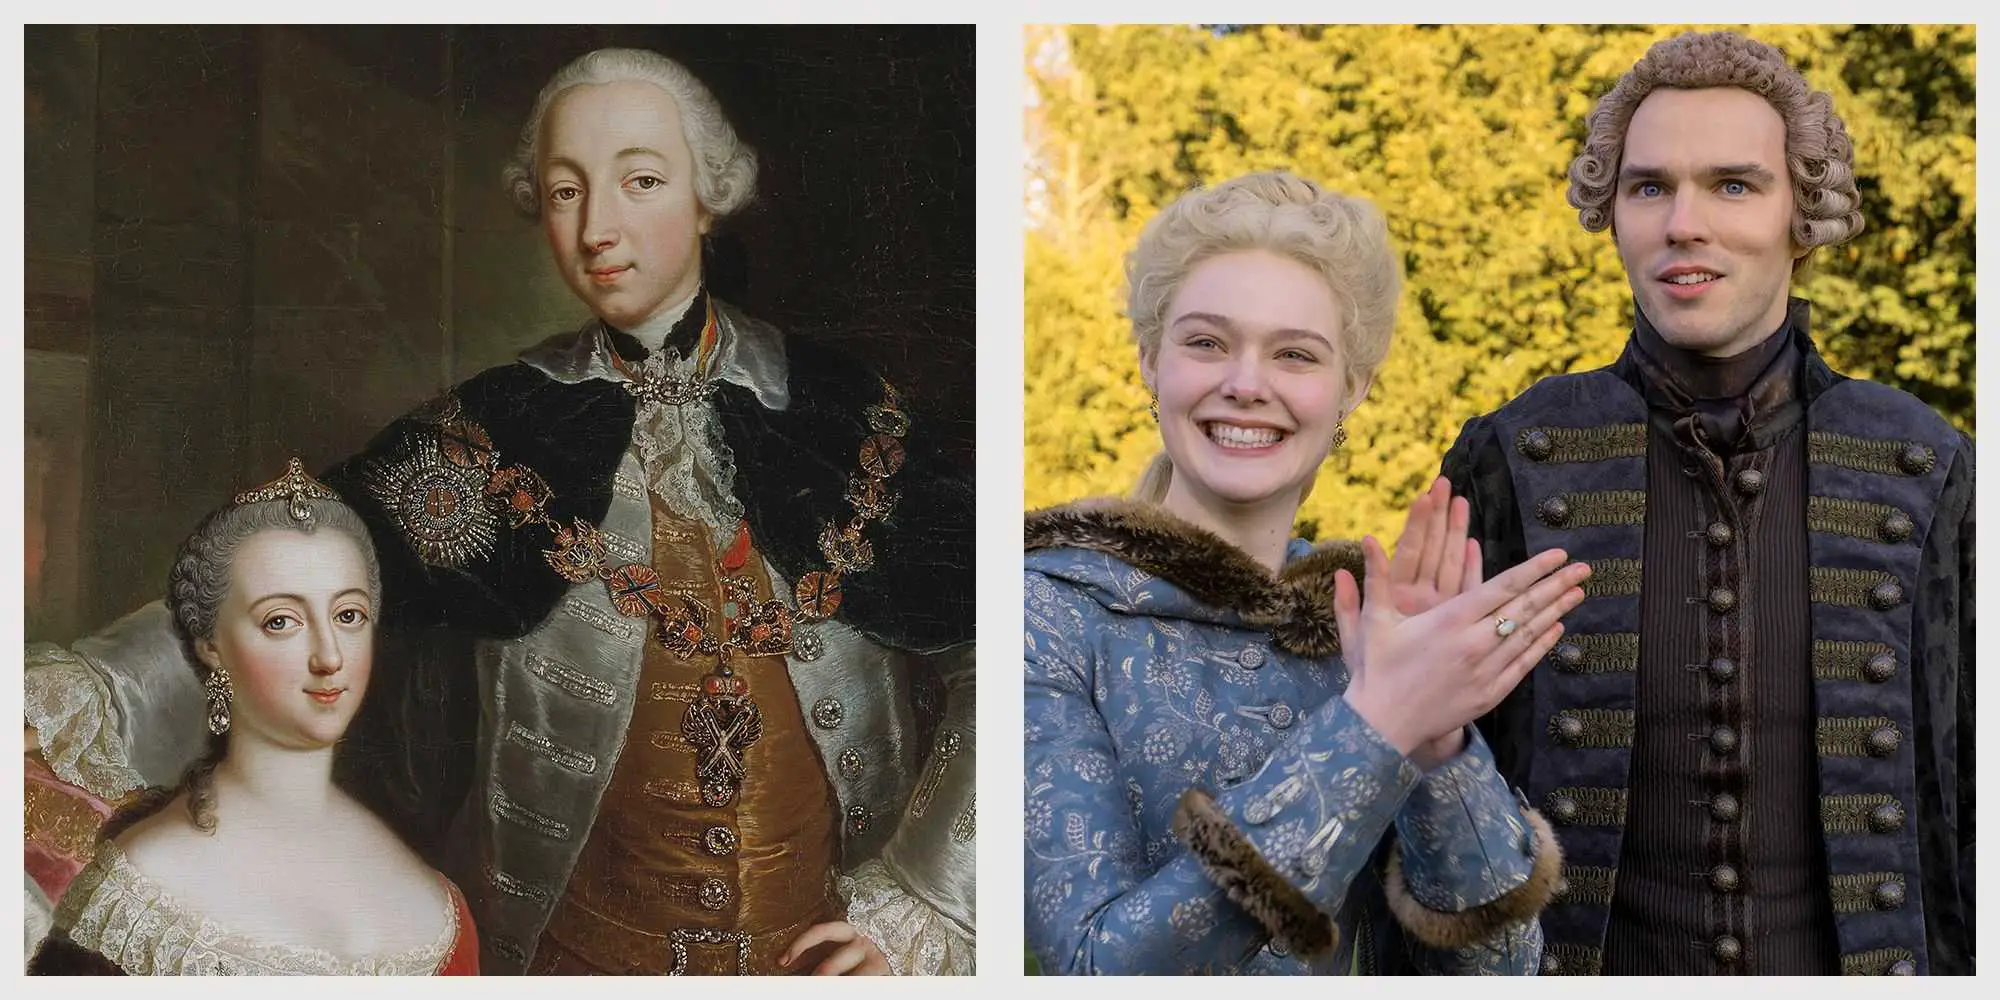 Vľavo: Ruský cár Peter III. a jeho manželka Katarína Veľká. Na obrázku vpravo sú ich filmové verzie.